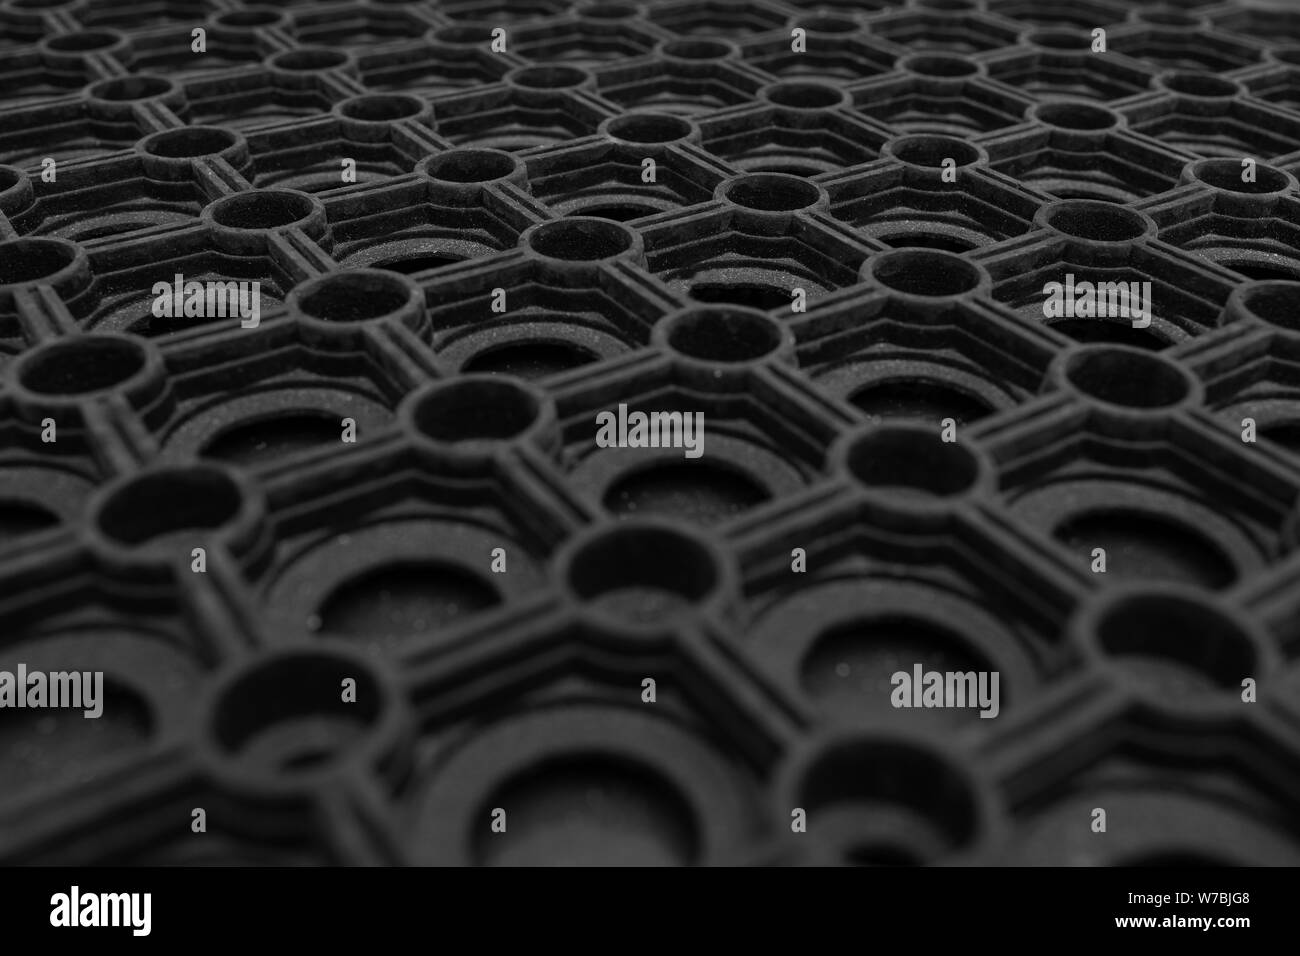 Eine Nahaufnahme eines schwarzen Gummi Teppich Stockfotografie - Alamy